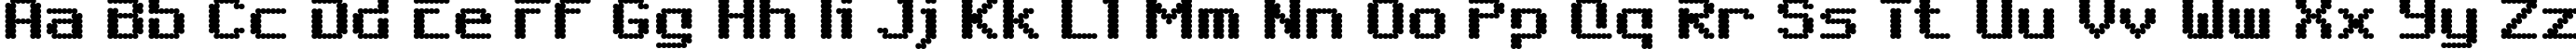 Пример написания английского алфавита шрифтом 6809 Chargen